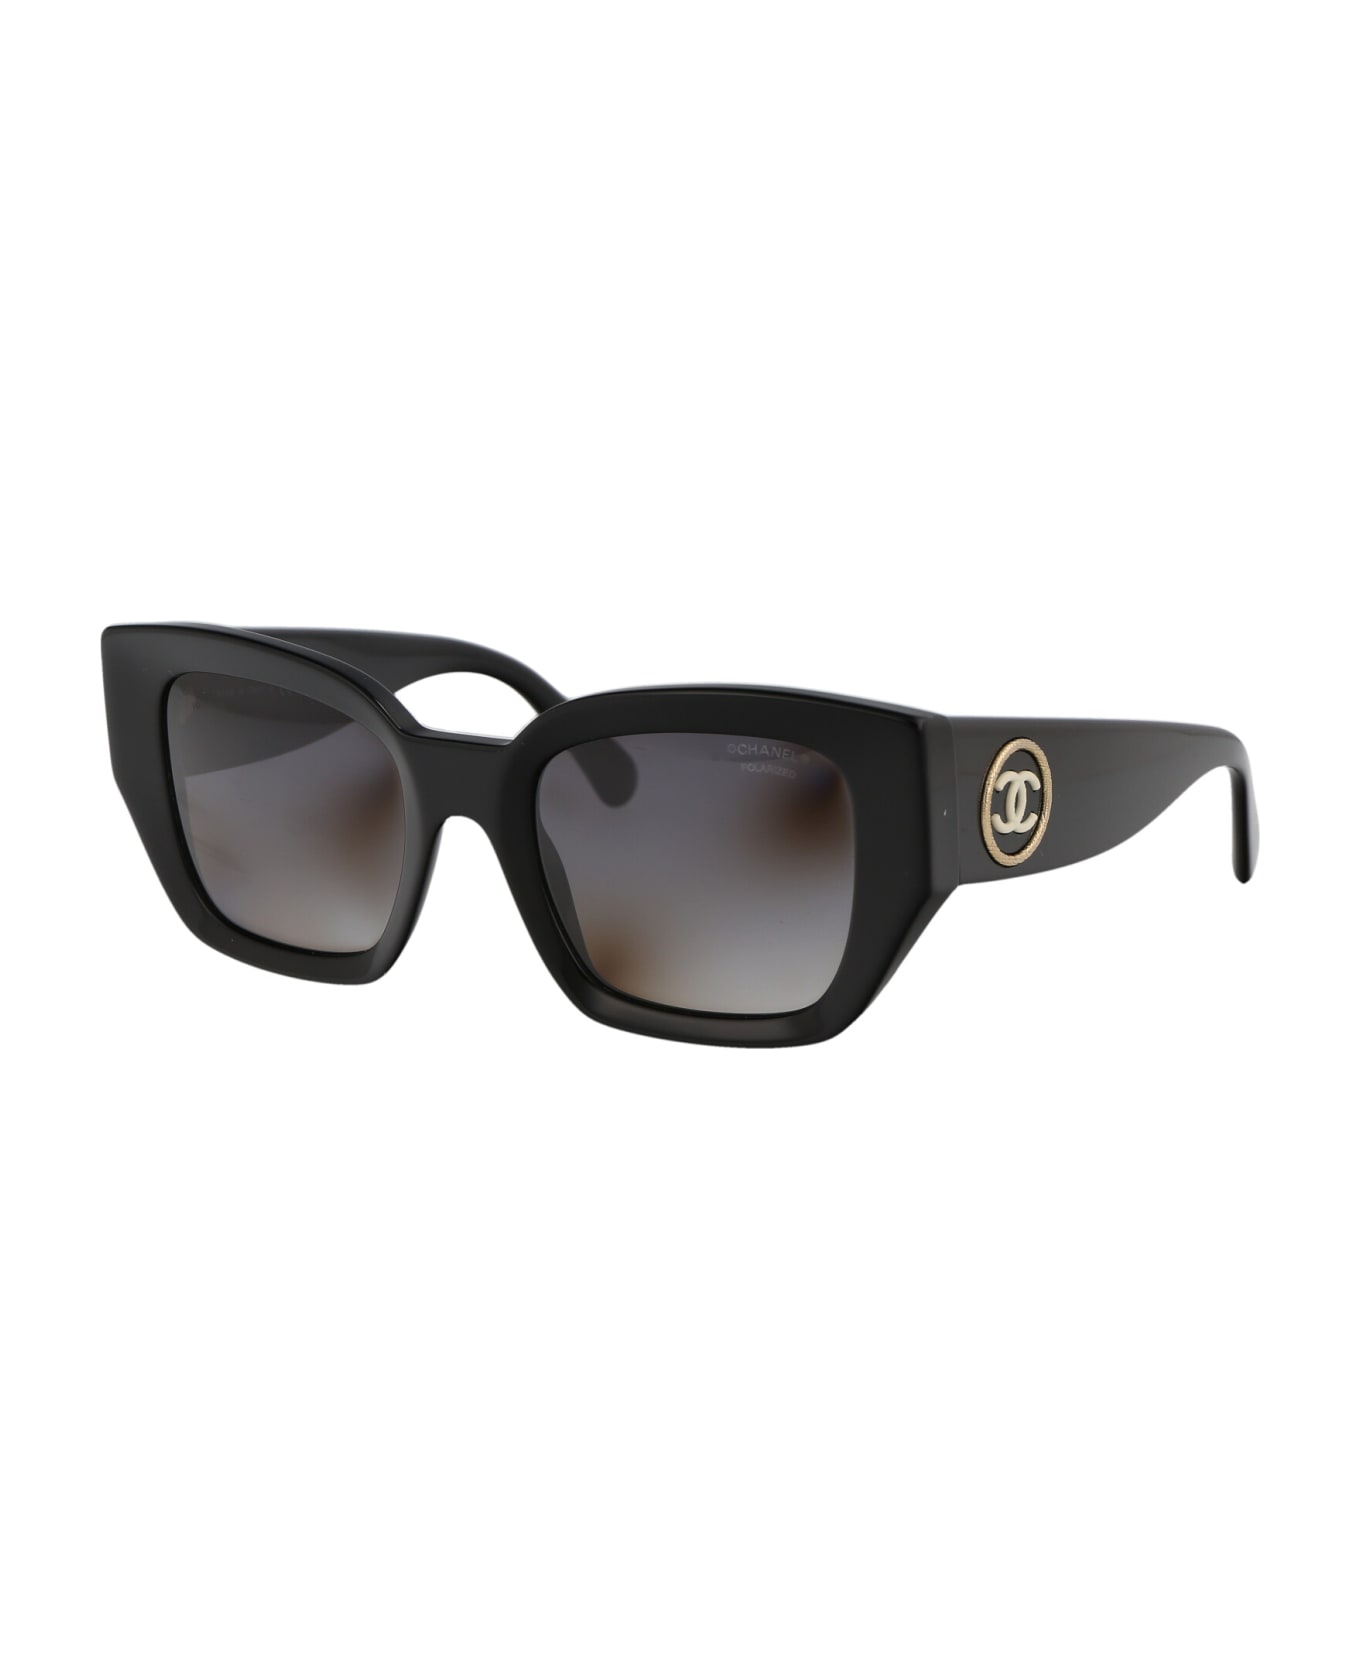 Chanel 0ch5506 Sunglasses - C622S8 BLACK